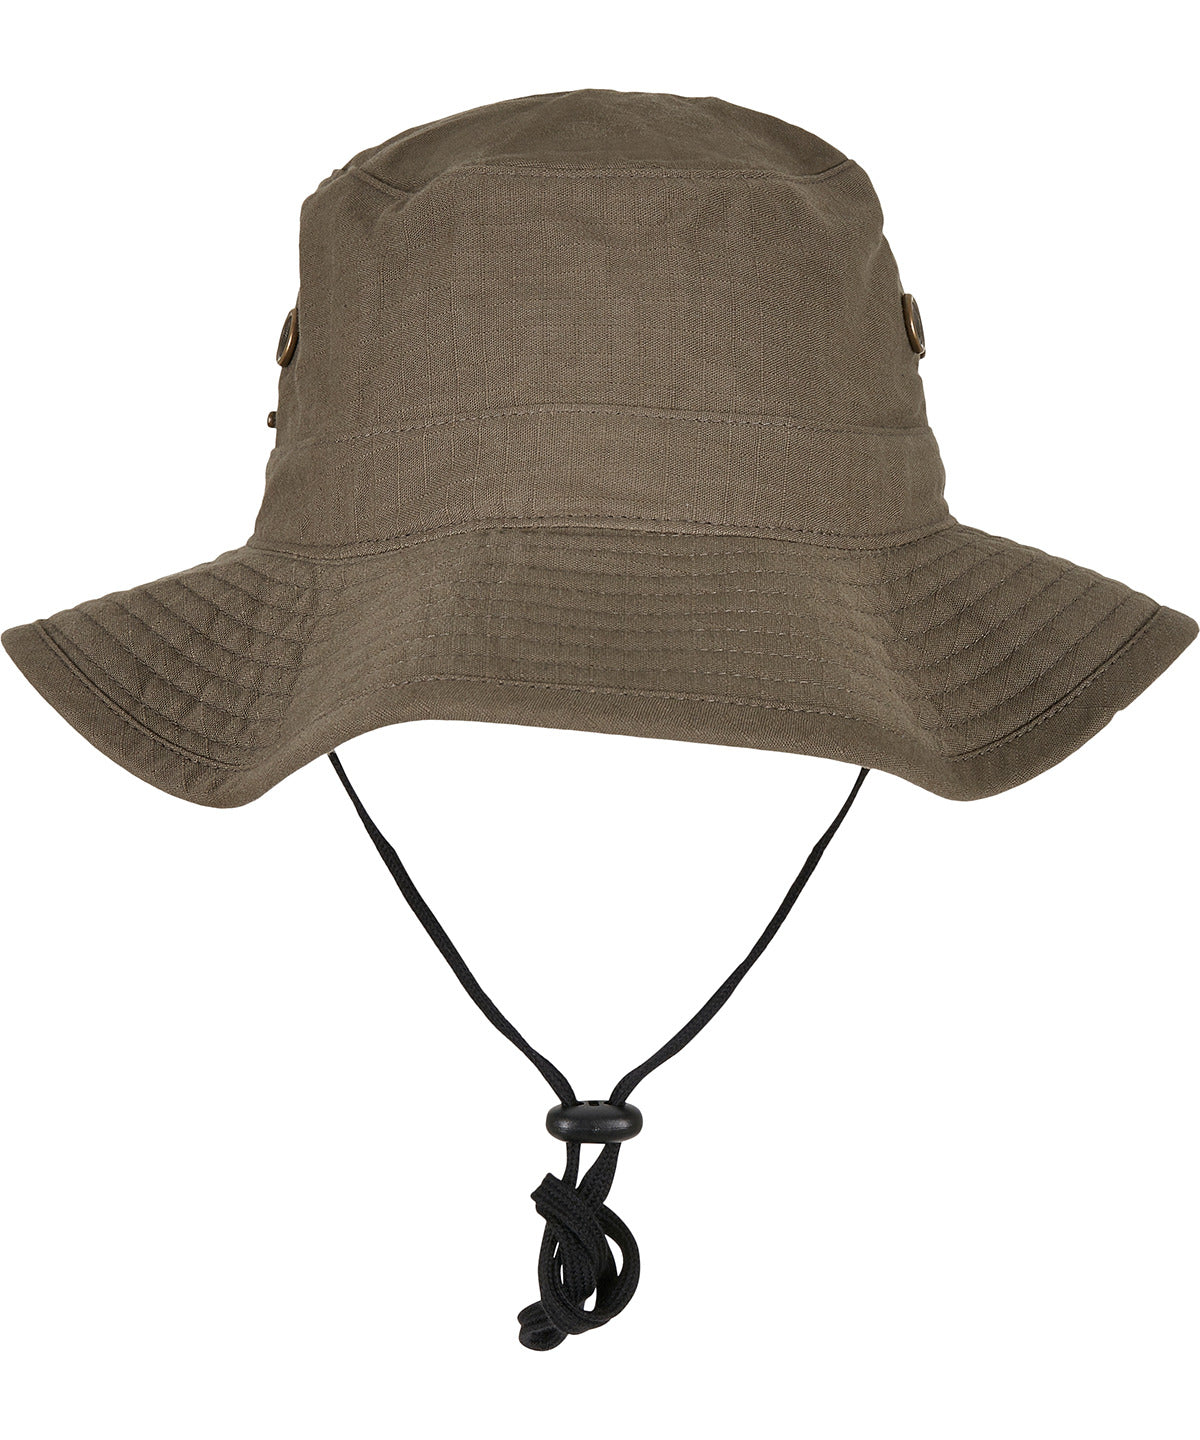 Húfur - Angler Hat (5004AH)